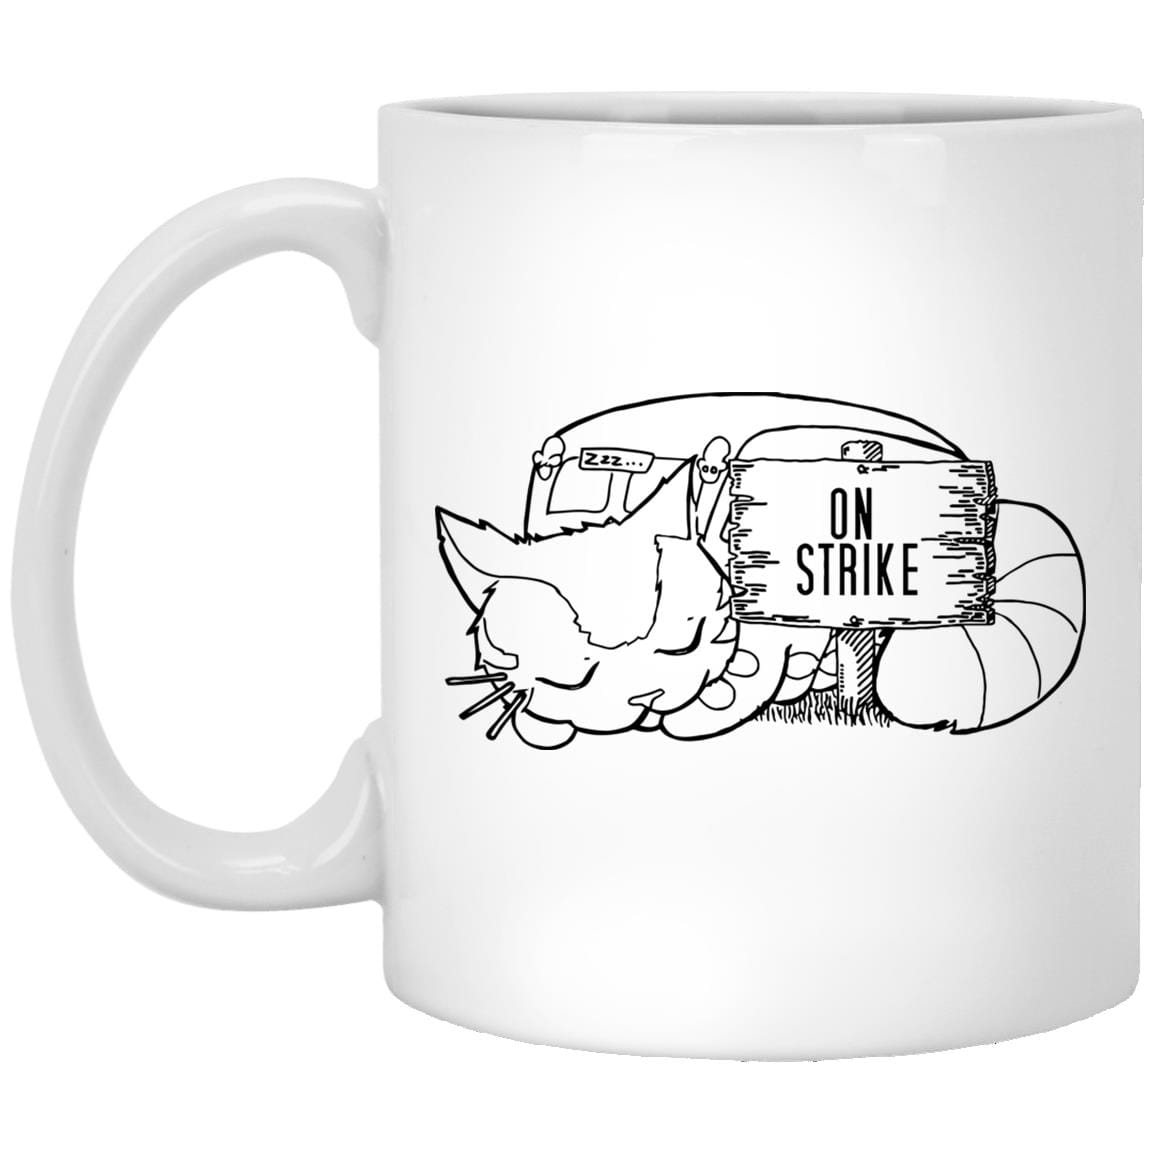 My Neighbor Totoro – CatBus on strike Mug